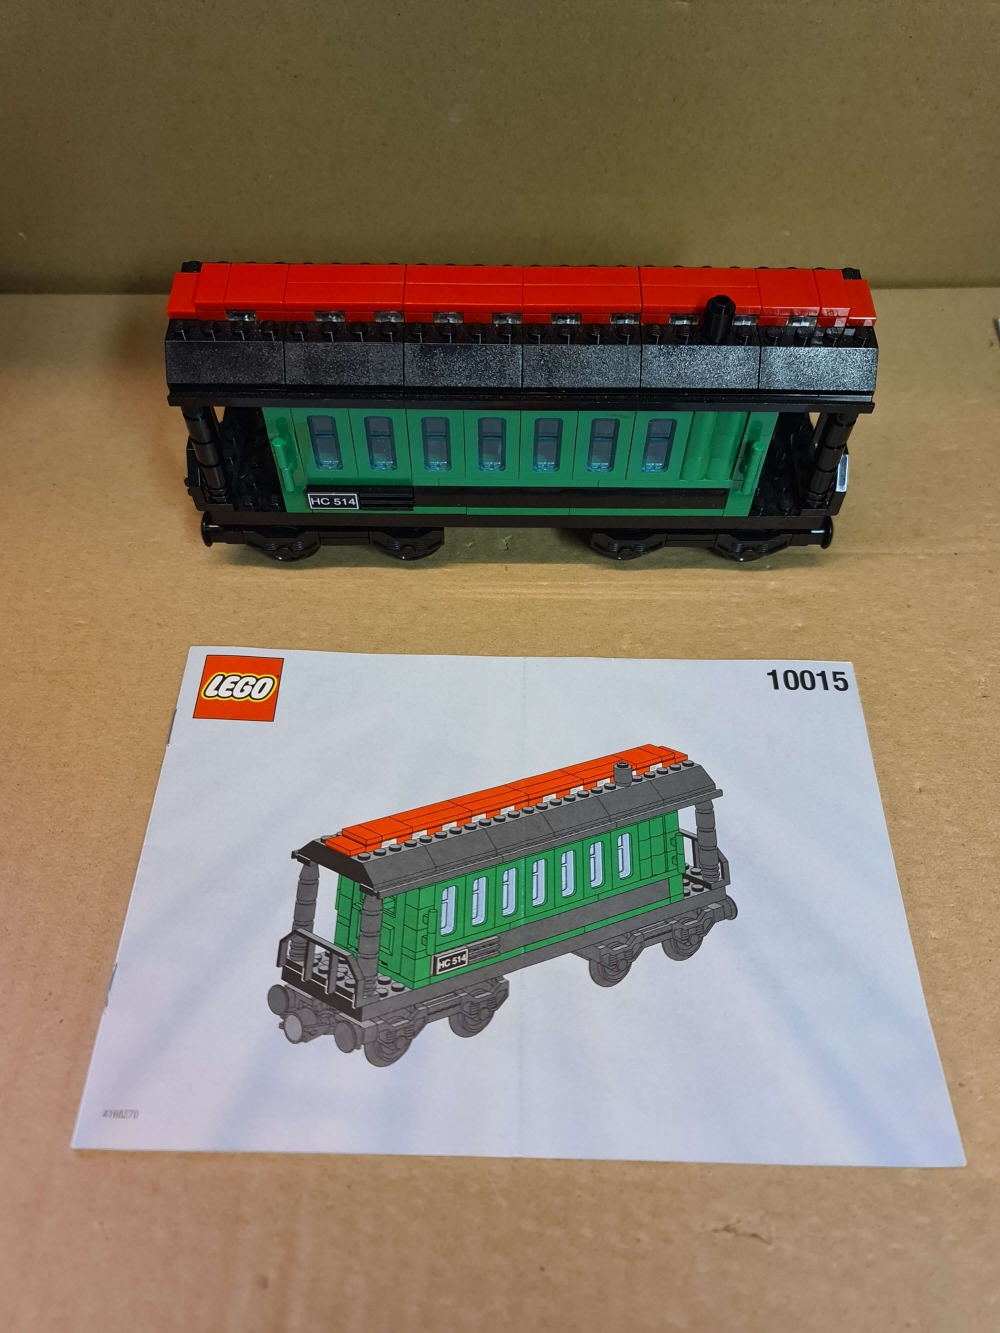 Sett 10015 fra Lego Train : 9V : My Own Train serien,
Meget pent.
Komplett med manual.